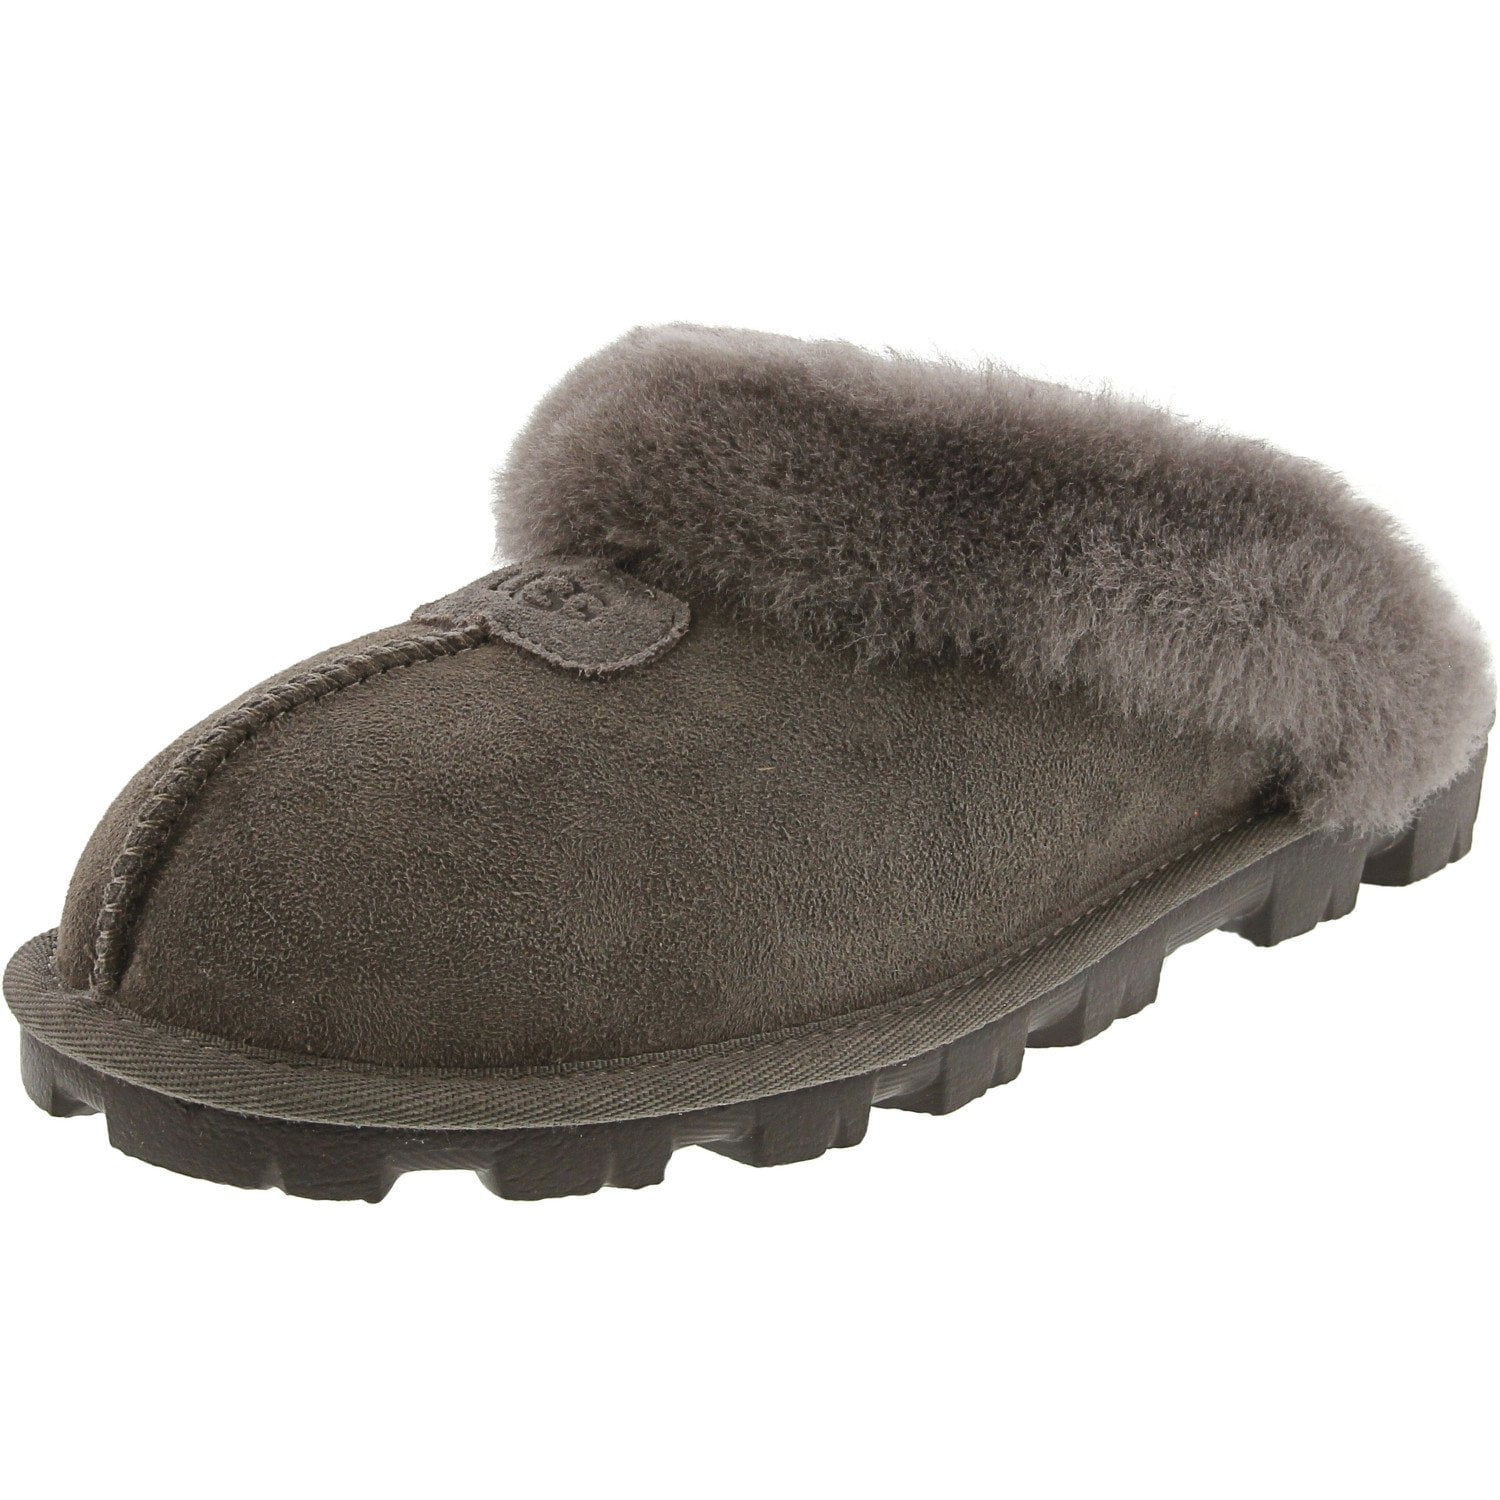 Buy > grey ugg slippers size 8 > in stock